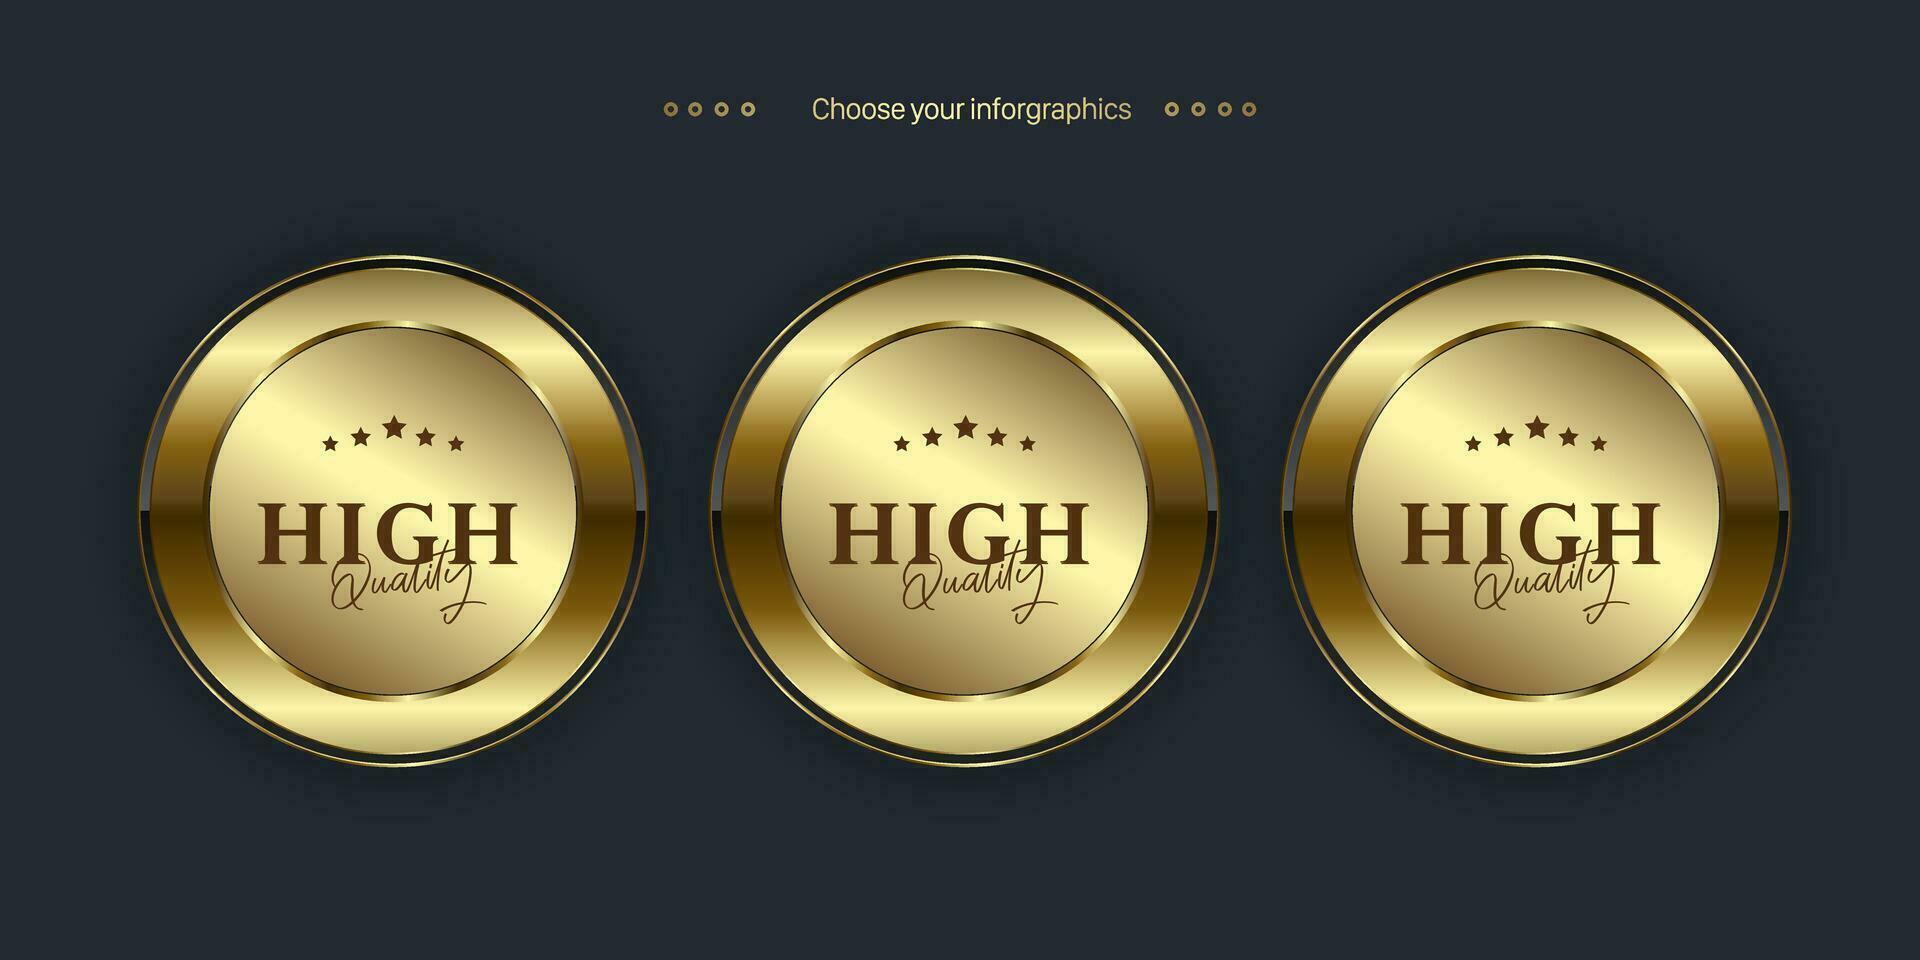 tre lusso cerchi premio e d'oro etichetta pulsante isolato su nero sfondo. realistico vettore illustrazione di d'oro, metallo lusso ui concetti di pulsanti